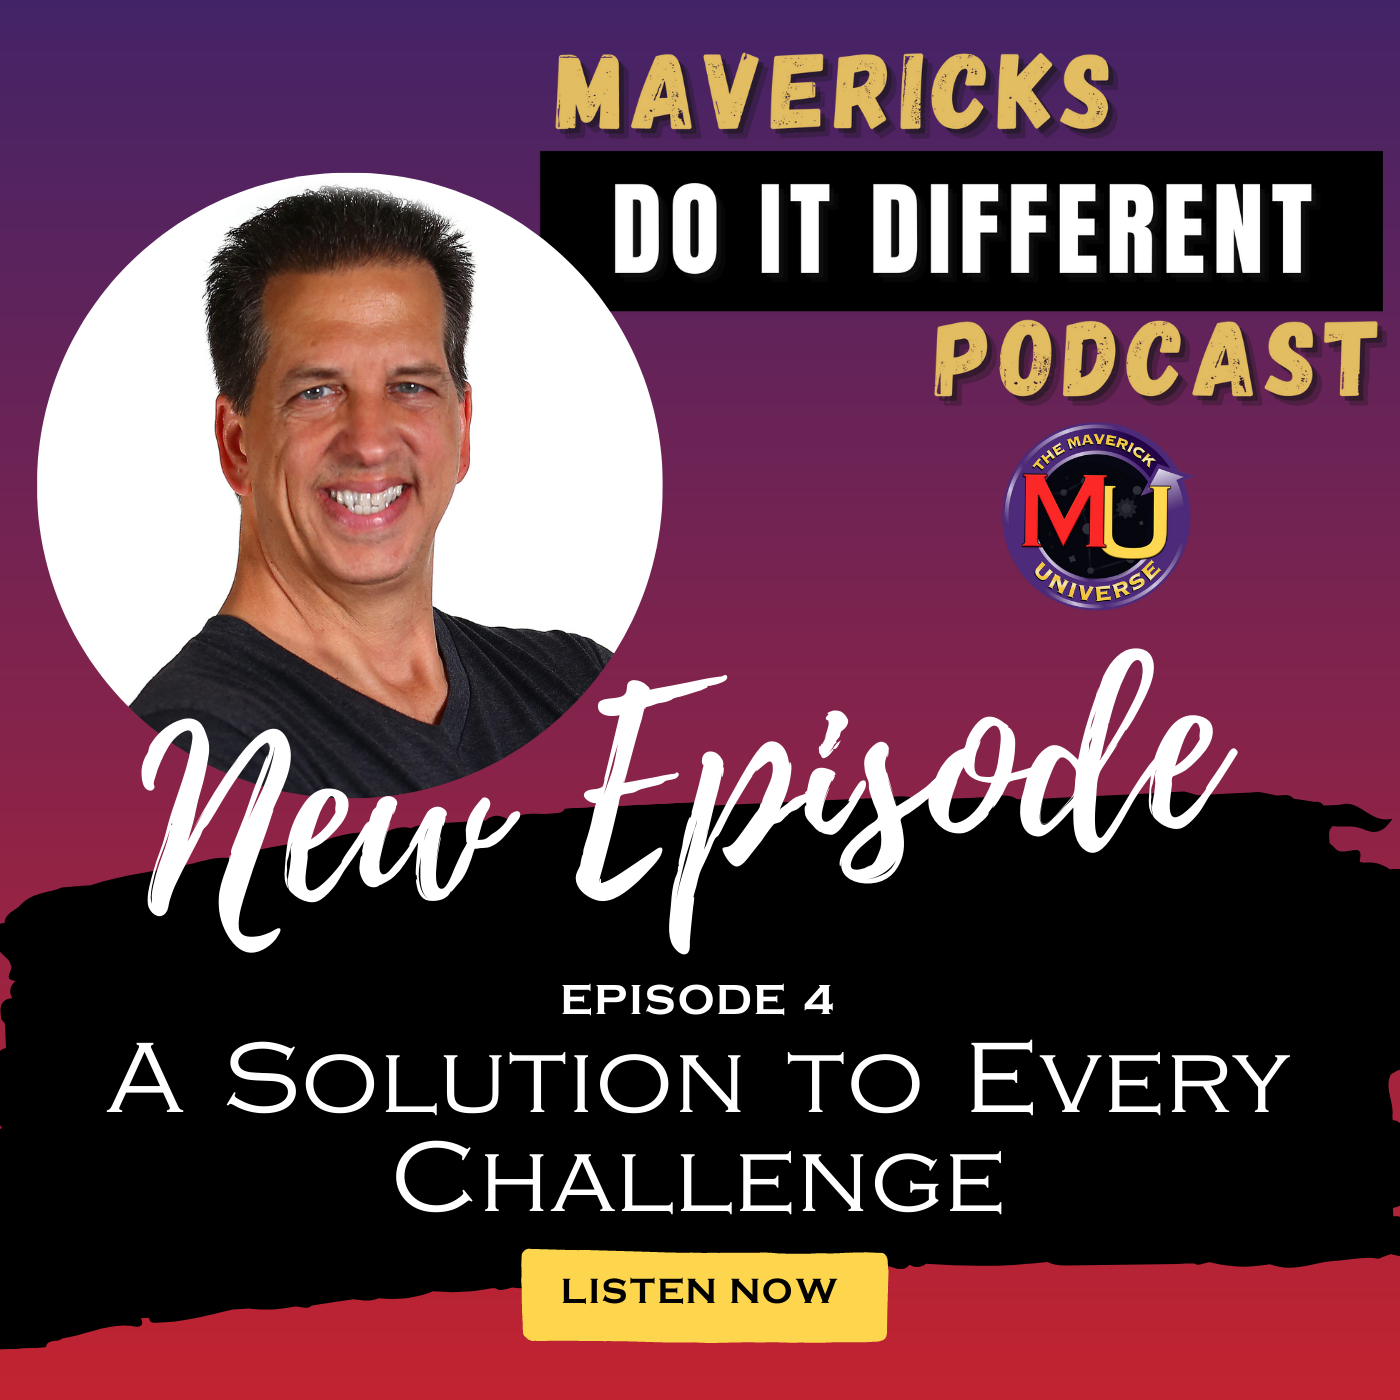 Artwork for podcast Mavericks Do It Different Podcast